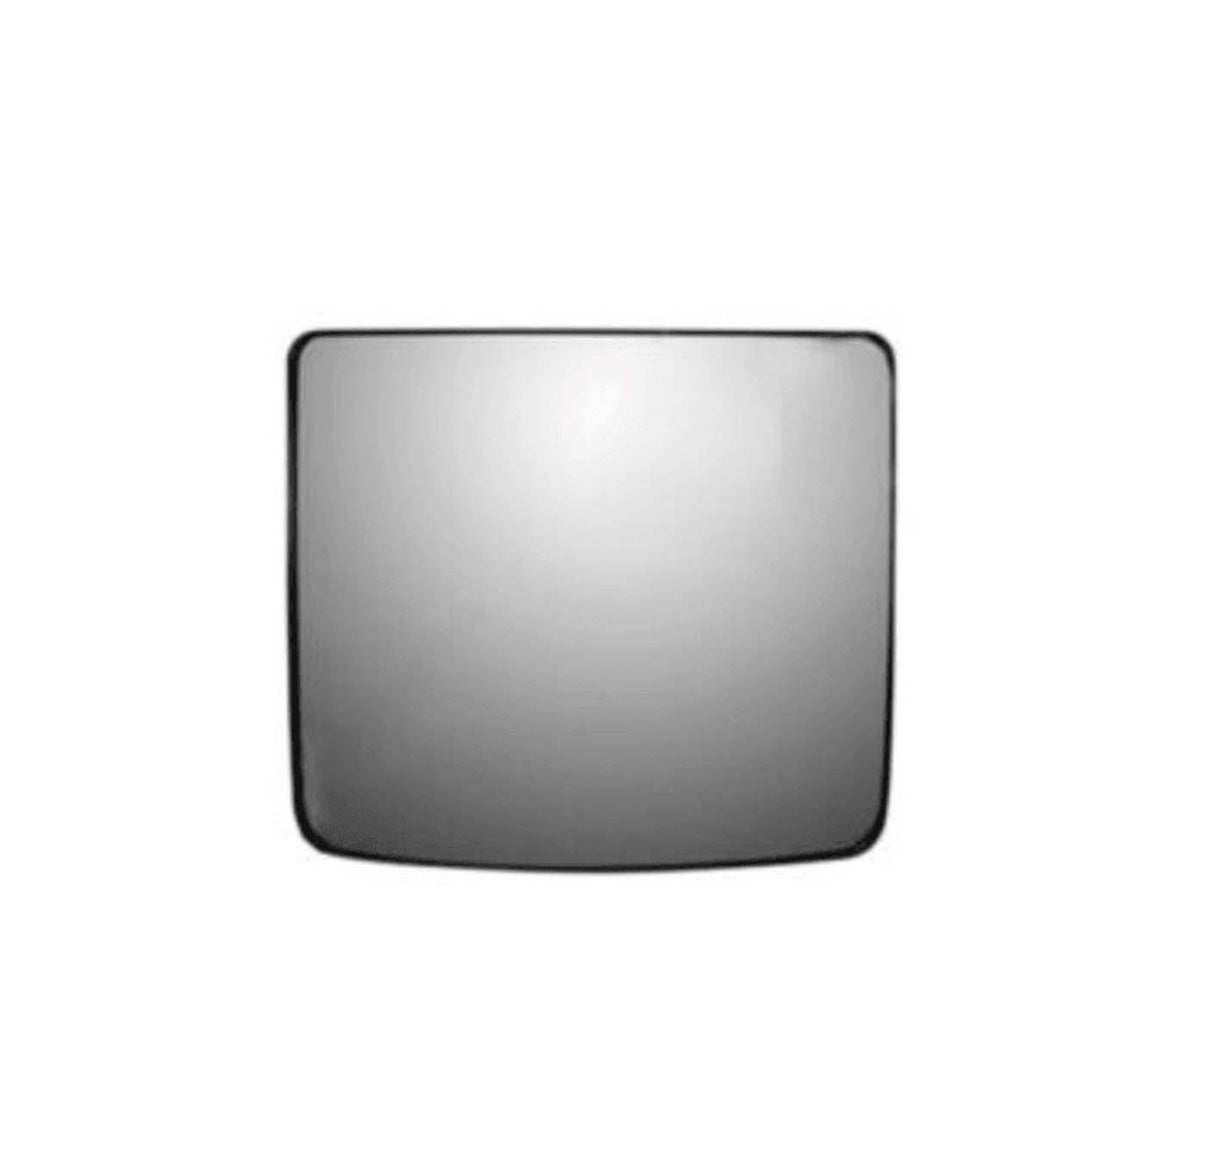 56359046 Genuine Kenworth Heated Lower Mirror Glass - Lh/Rh